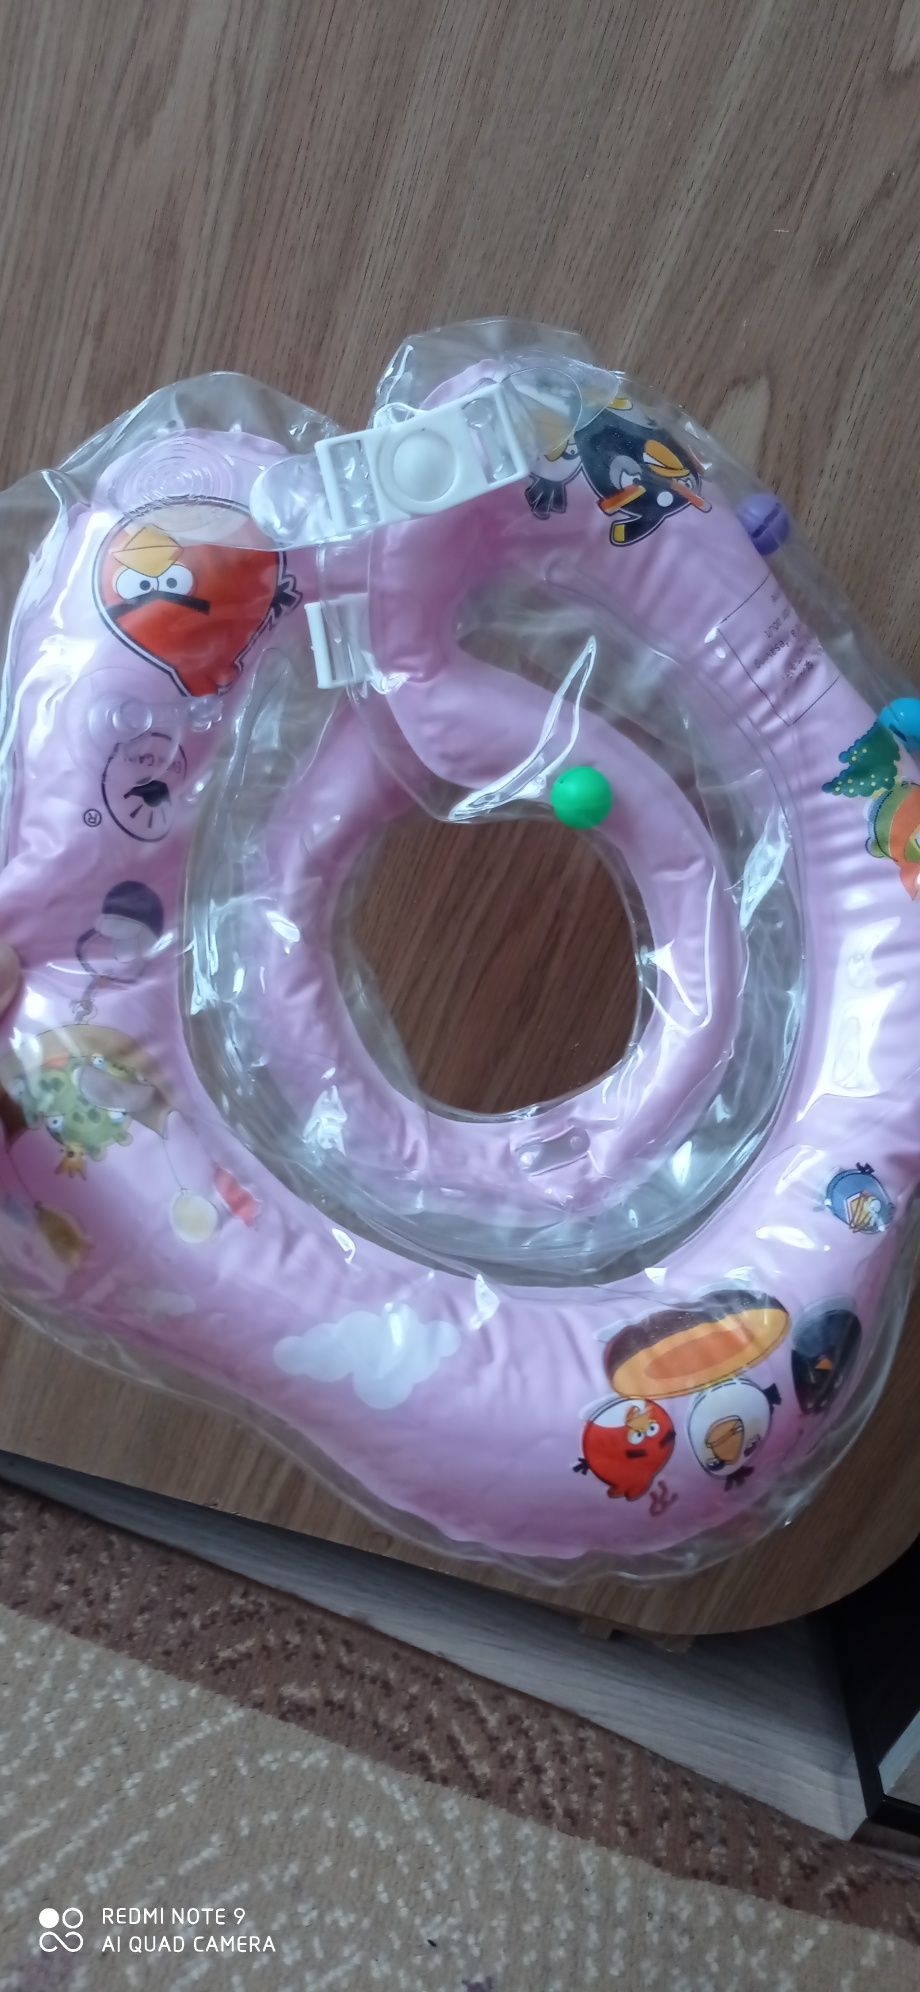 Круг для купання немовлят